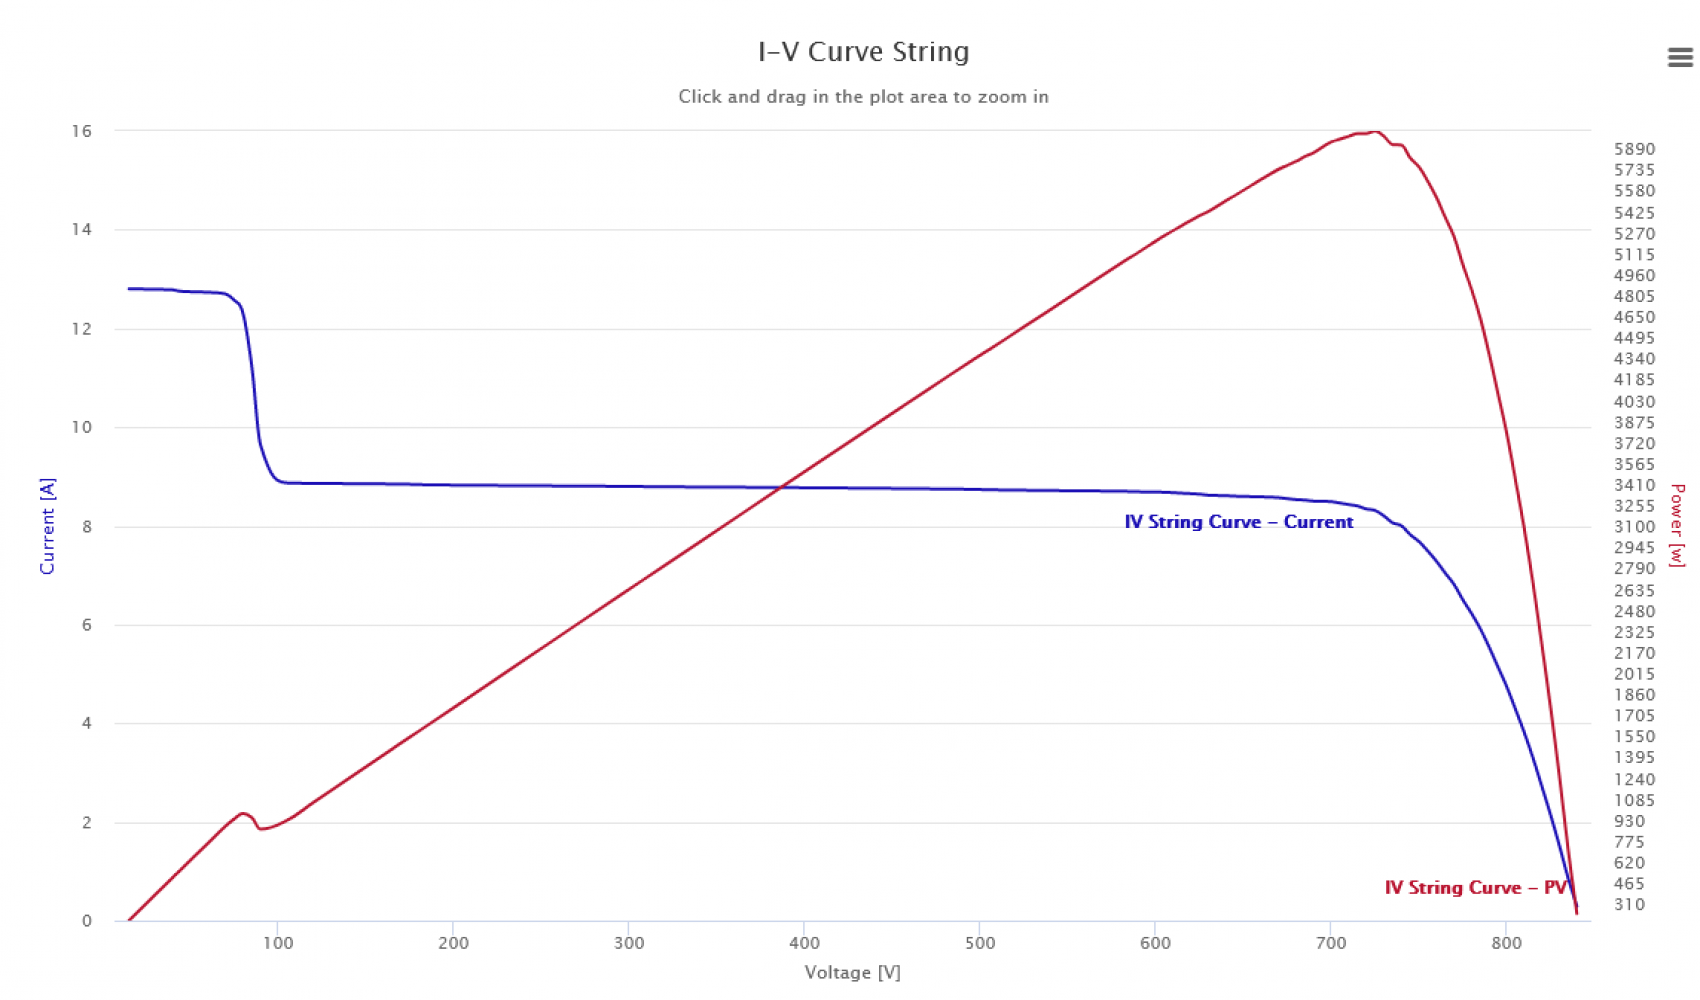  Mejora de la eficiencia gracias al análisis detallado de las curvas IV